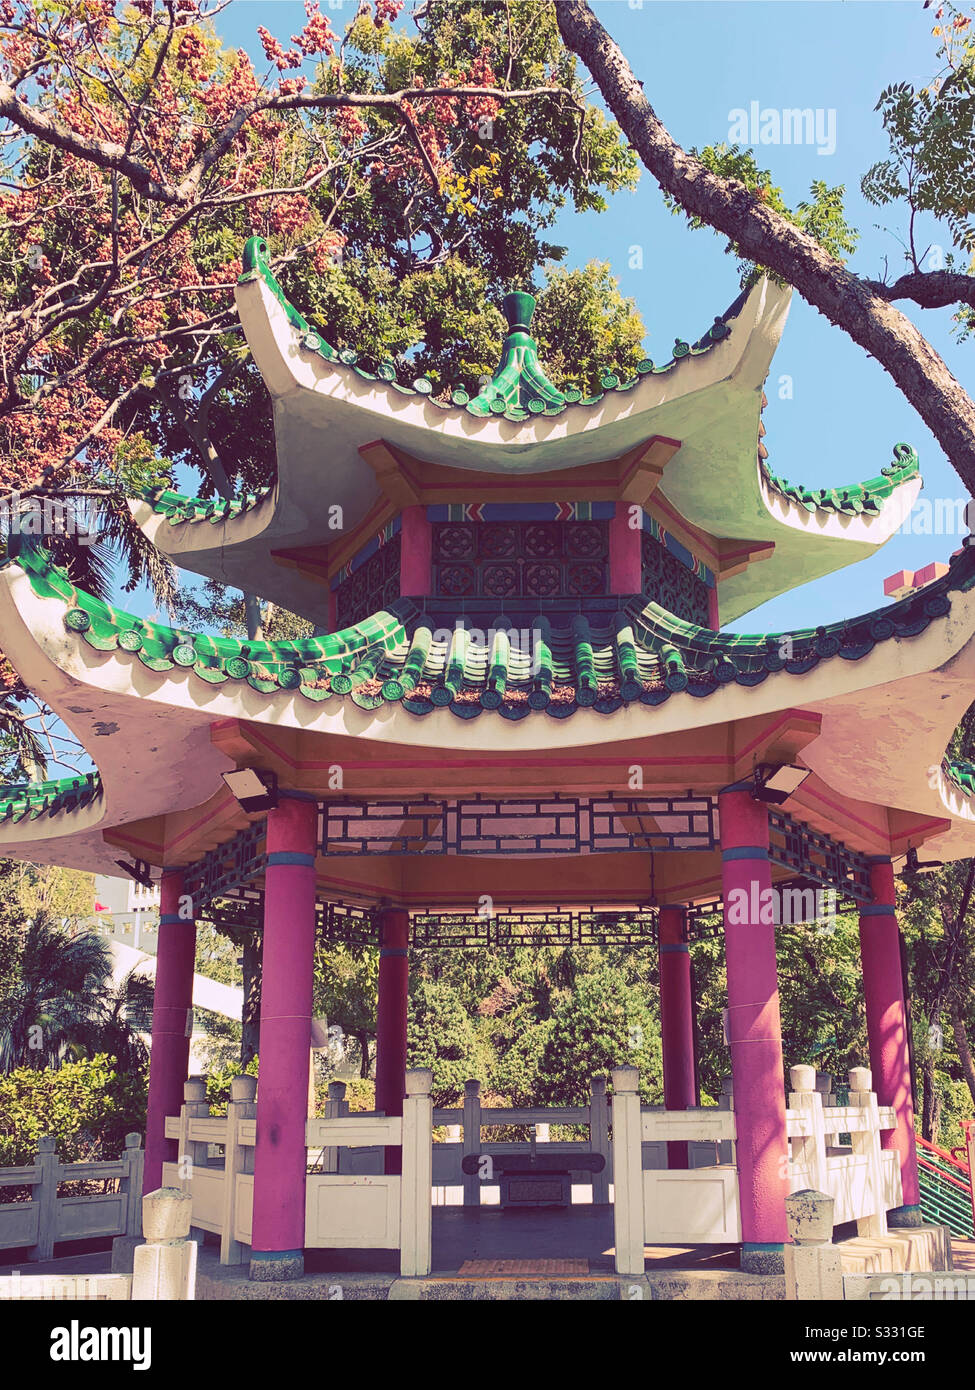 Innenhof im chinesischen Stil, chinesischer Garten, chinesische Architektur Stockfoto